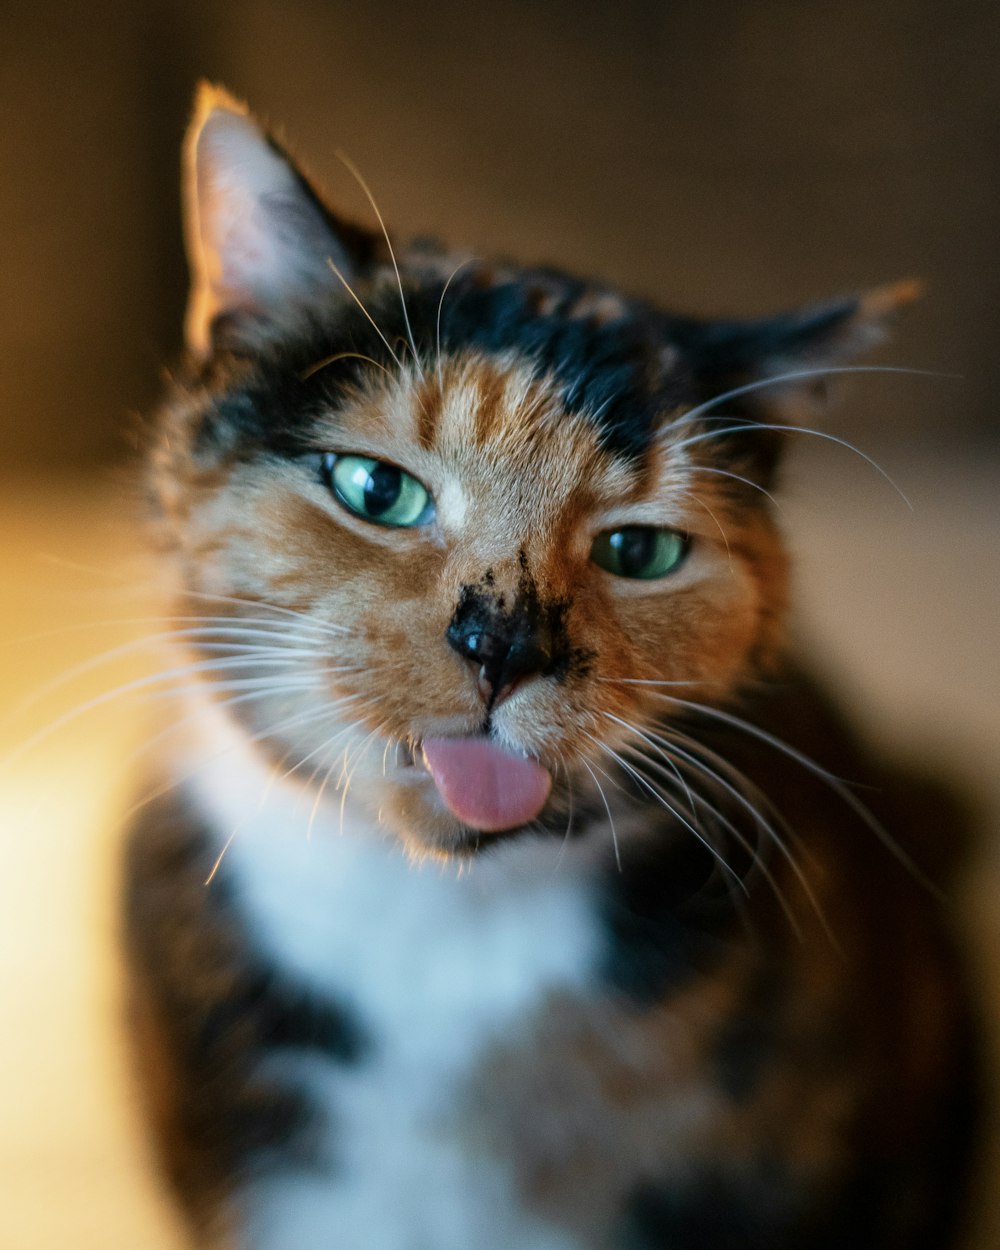 Nahaufnahme einer Katze mit herausgestreckter Zunge